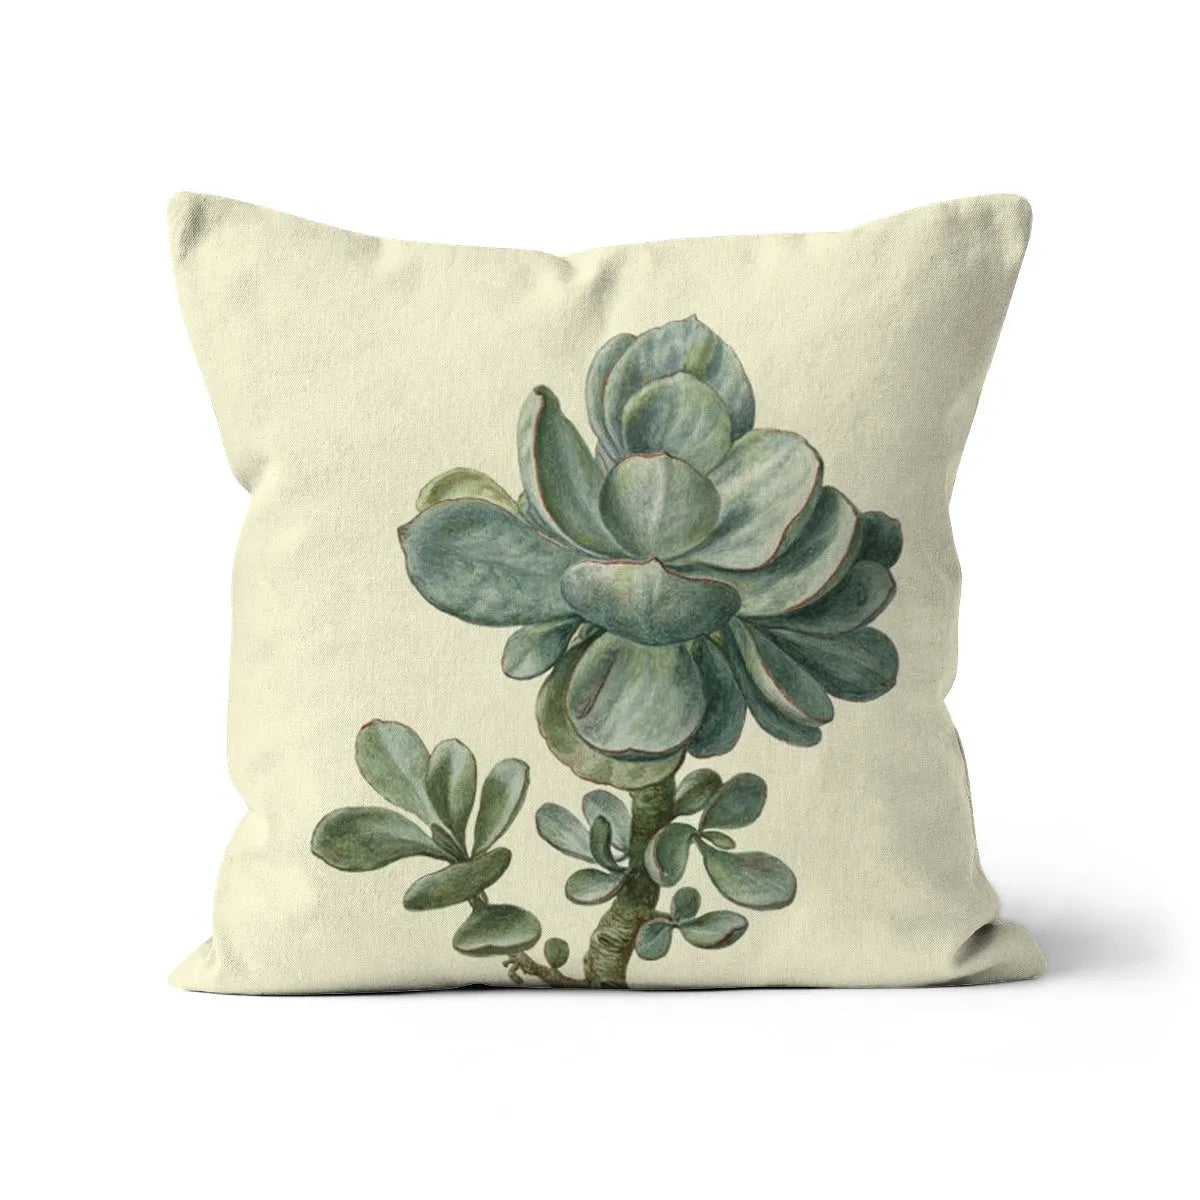 Little Green Man Cushion - Linen / 16’x16’ Throw Pillows Toby Leon